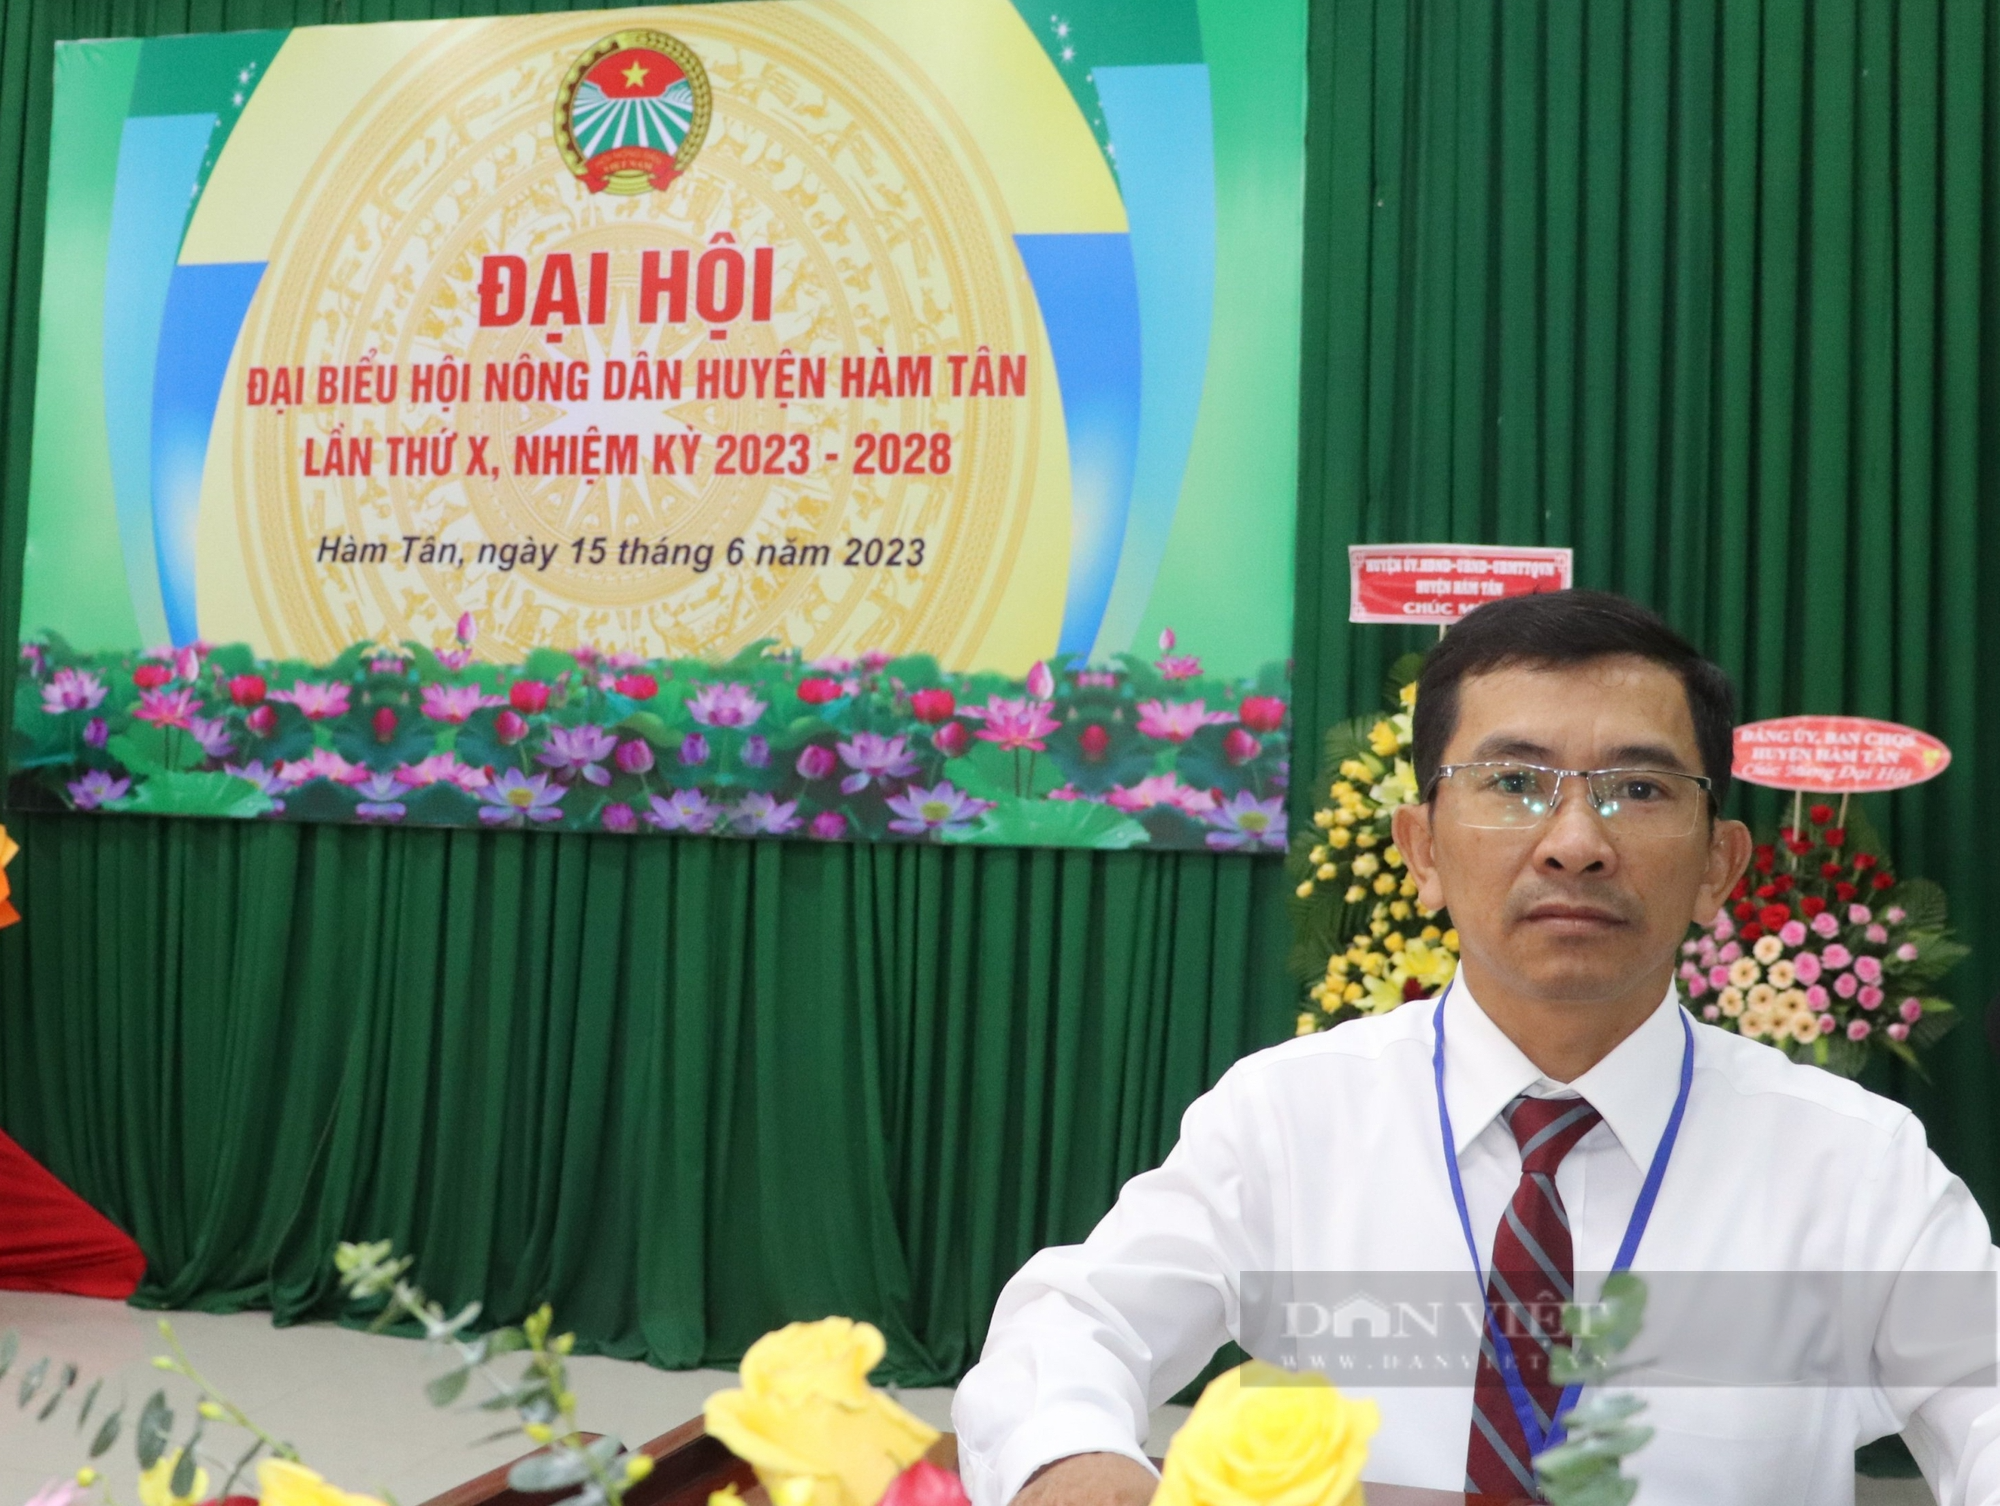 Bình Thuận: Ông Phạm Xuân Thọ tái đắc cử Chủ tịch Hội Nông dân huyện Hàm Tân - Ảnh 8.